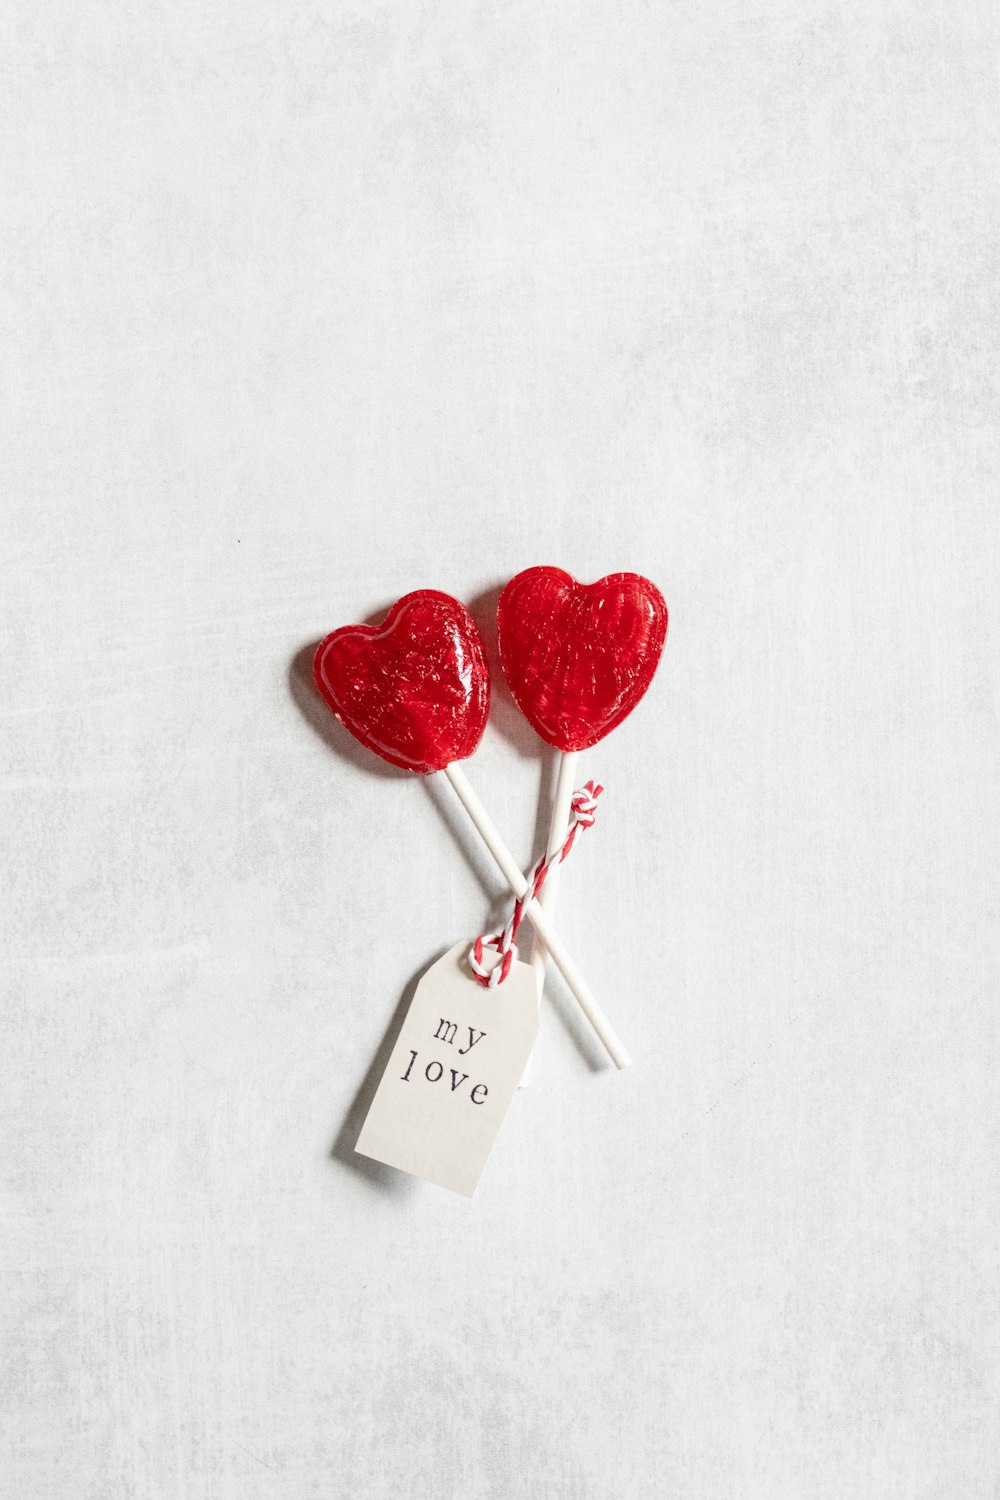 Dos piruletas en forma de corazón en un palo con una etiqueta de precio